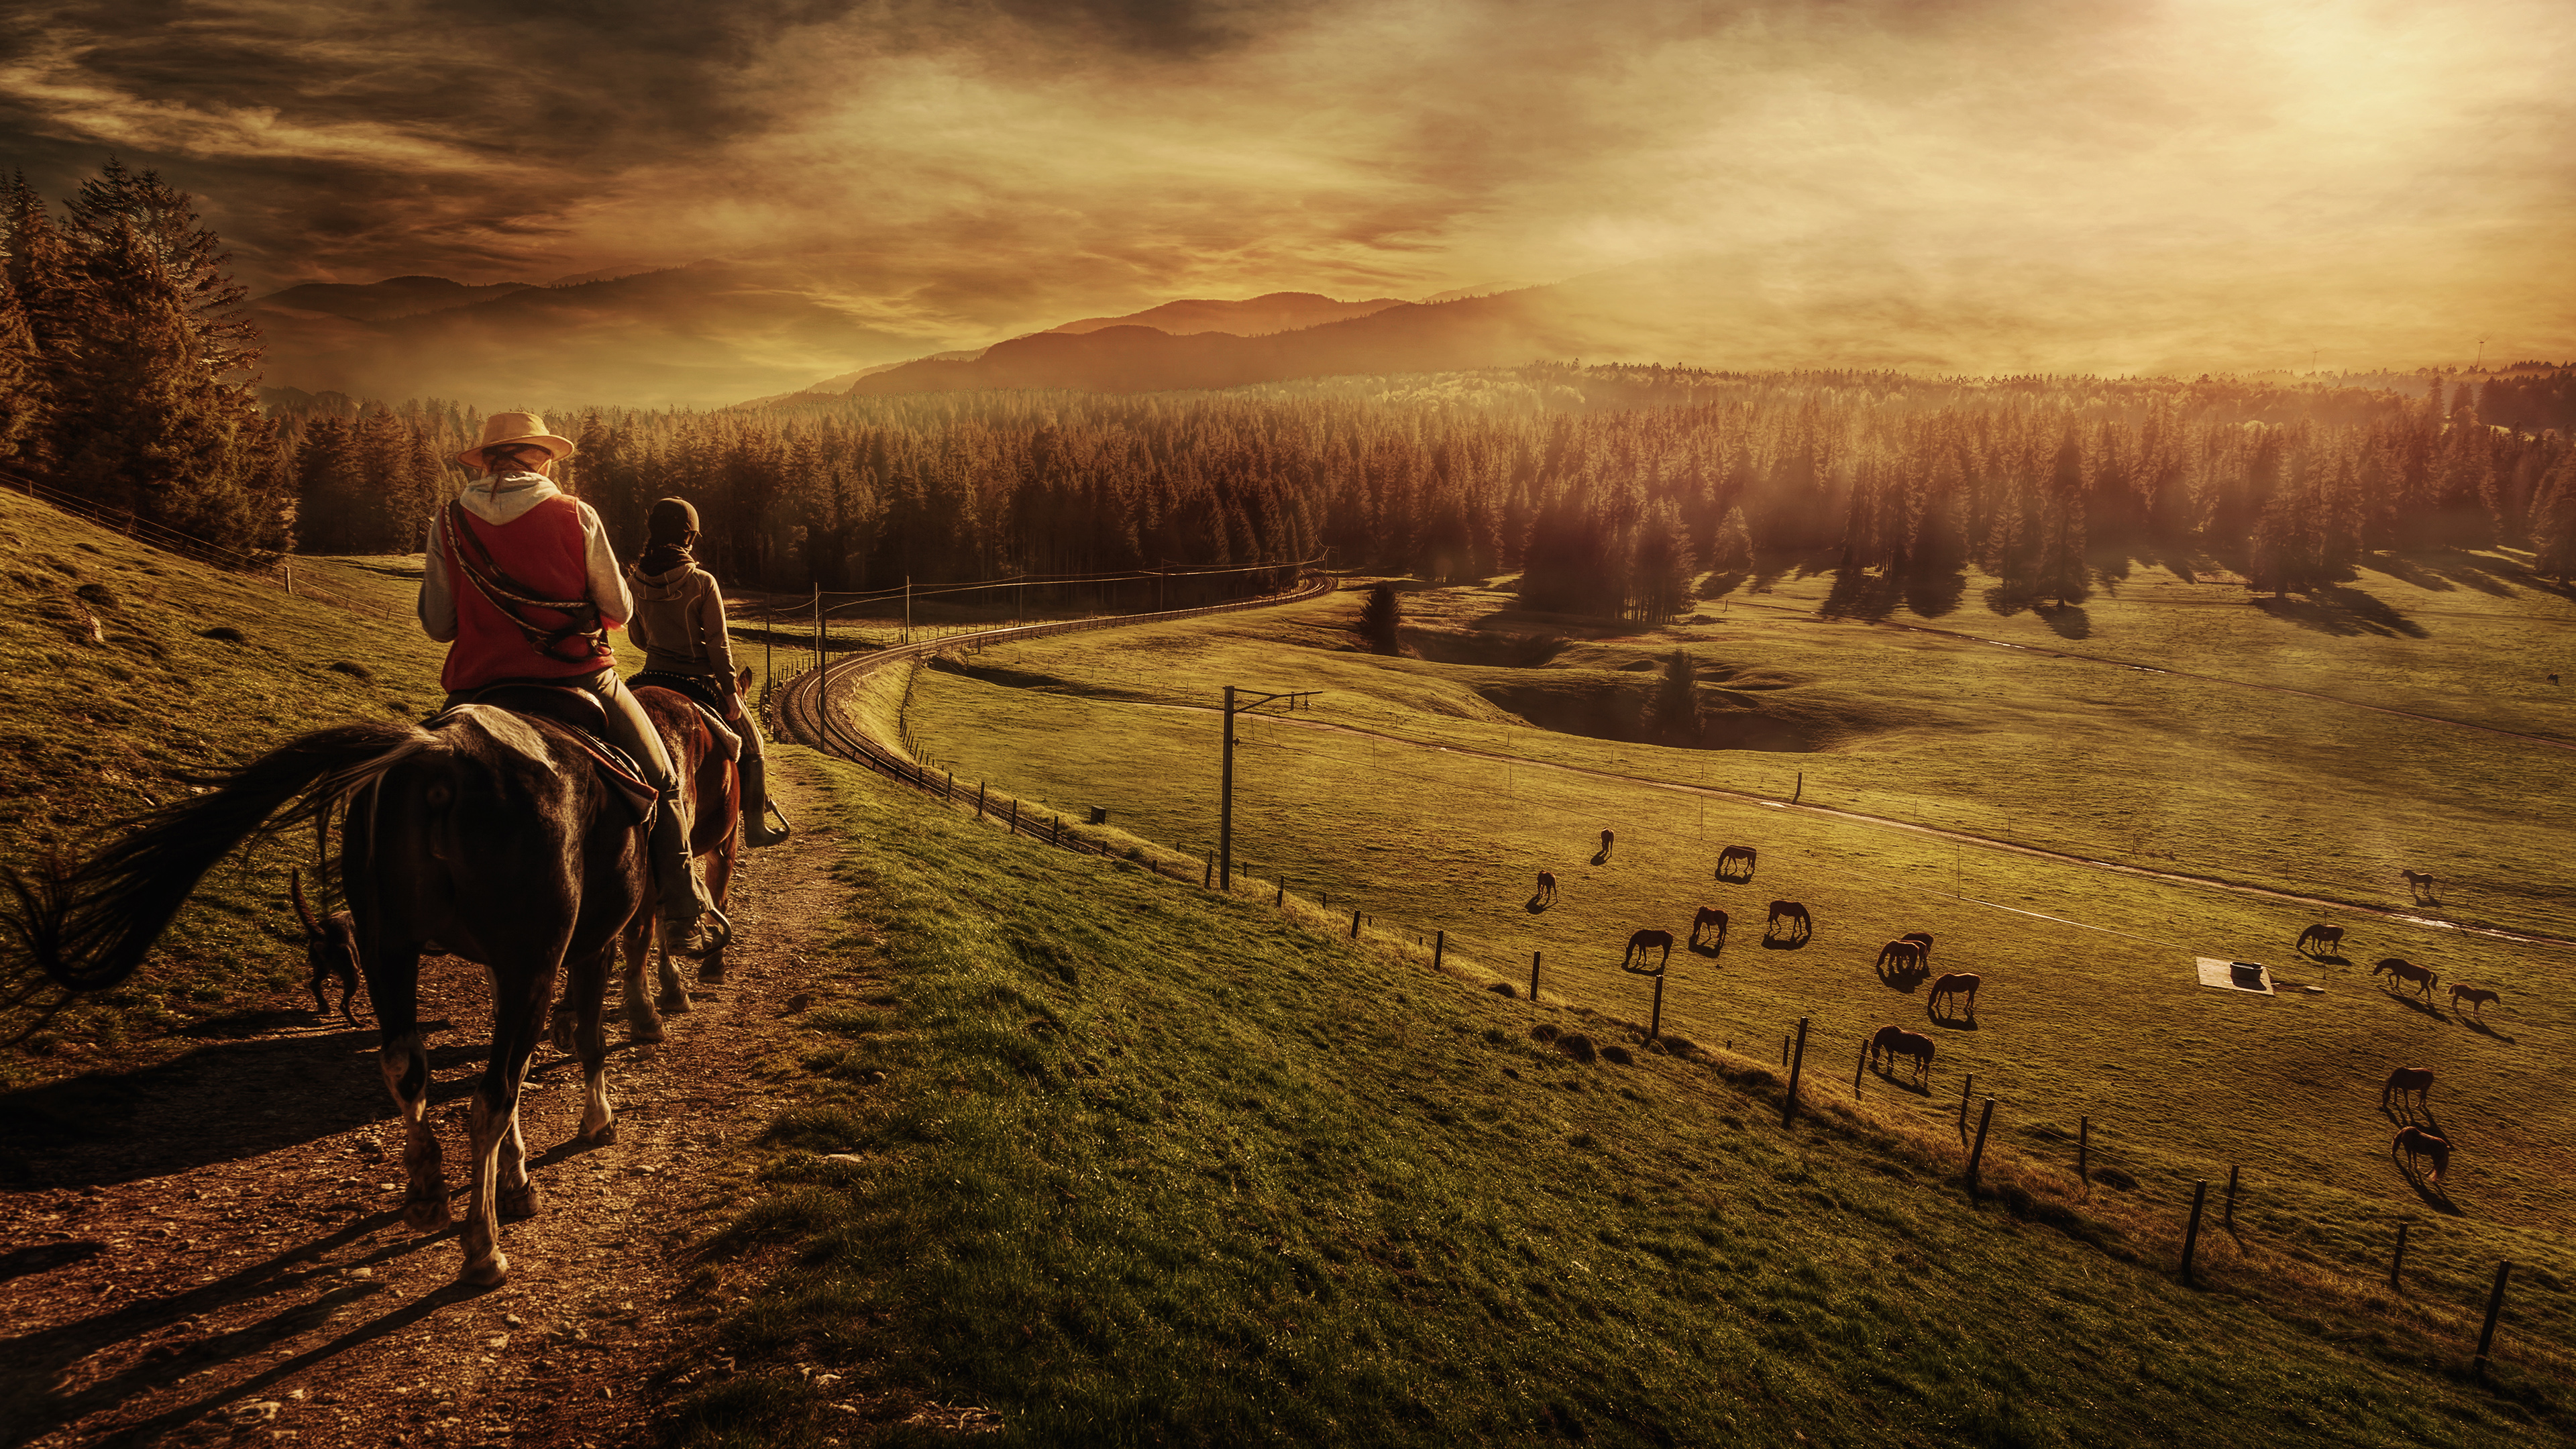 photography, landscape, people, horse, horse riding, sunset phone background